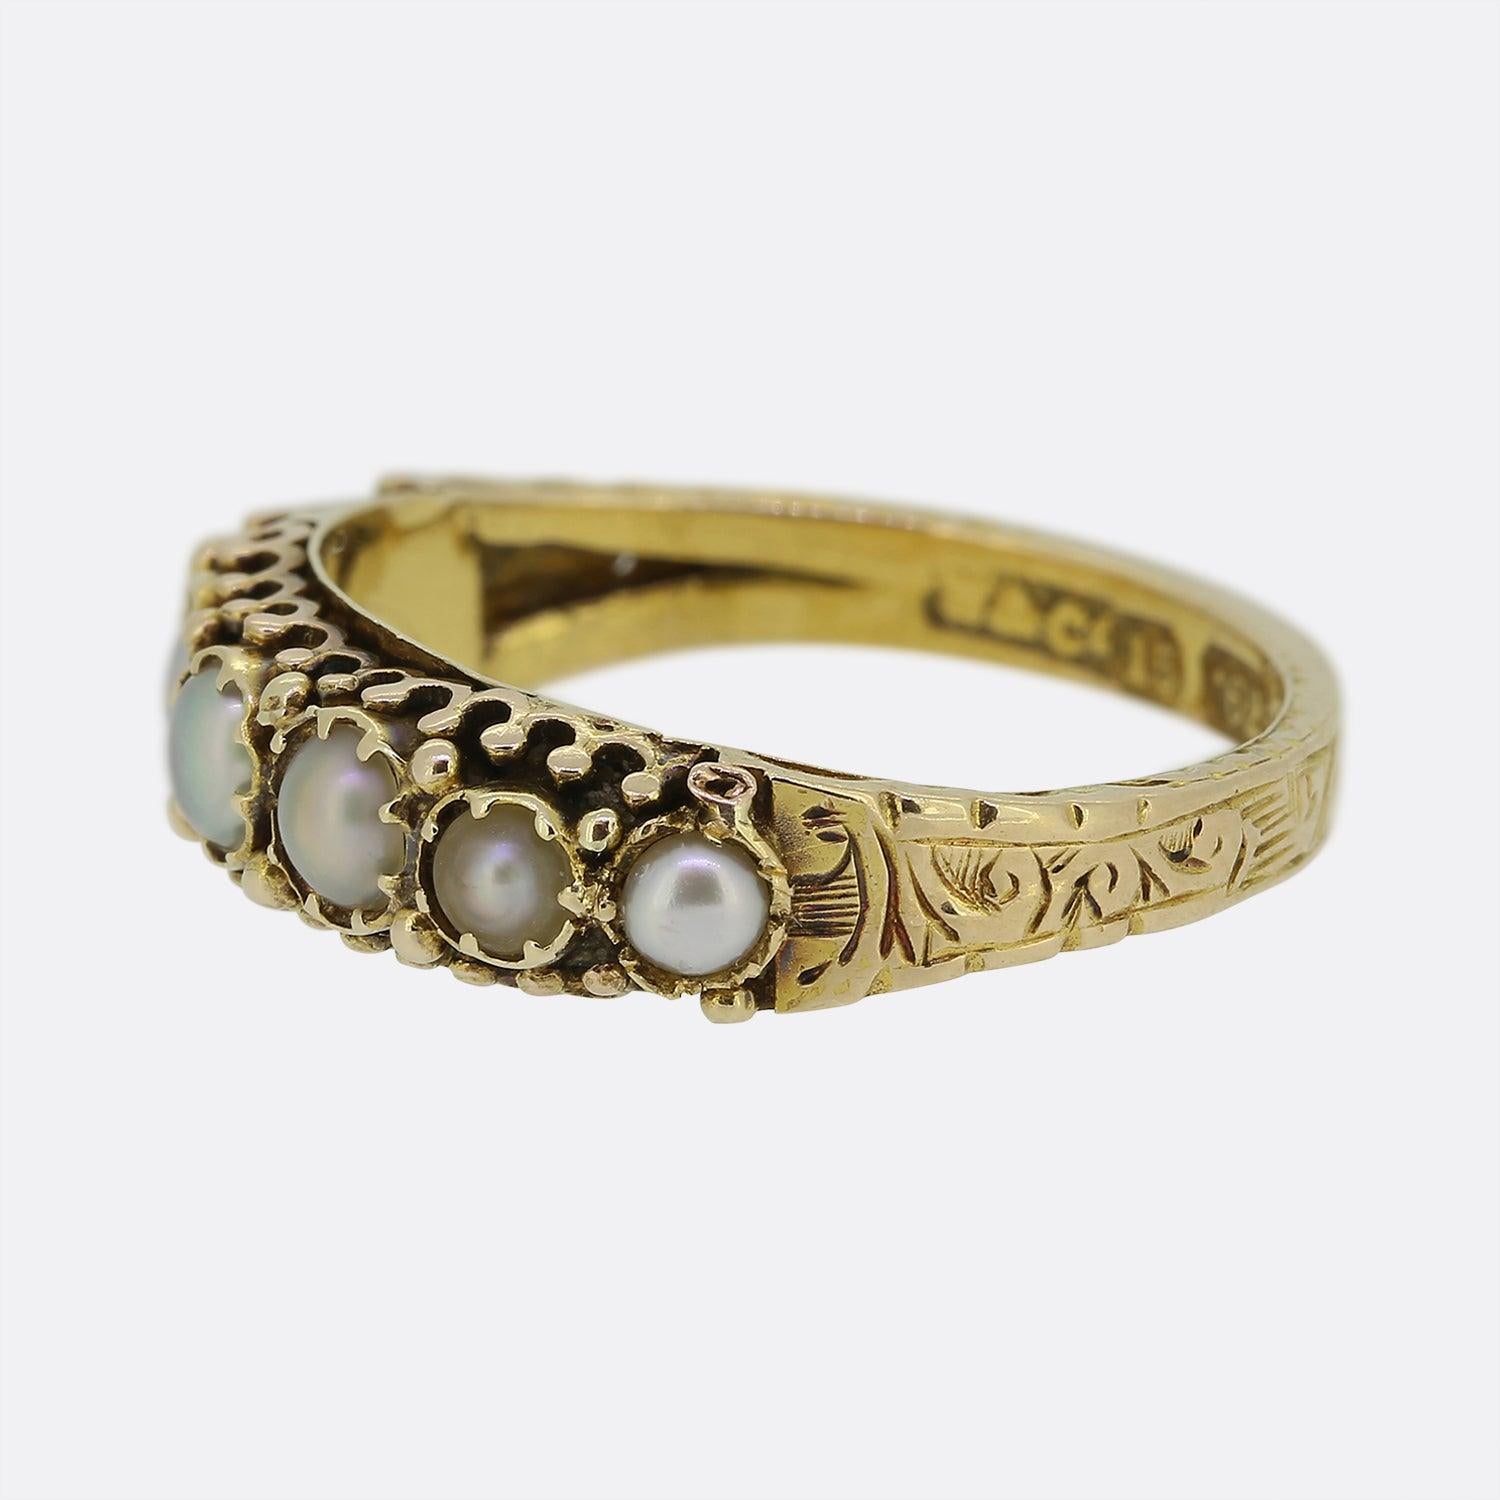 Hier haben wir einen charmanten Ring mit sieben Steinen aus der viktorianischen Zeit. Eine Fassung aus 15 Karat Gelbgold beherbergt sieben runde Naturperlen, die einzeln in einer einzeiligen Formation auf der Vorderseite gefasst sind. Dieses Stück